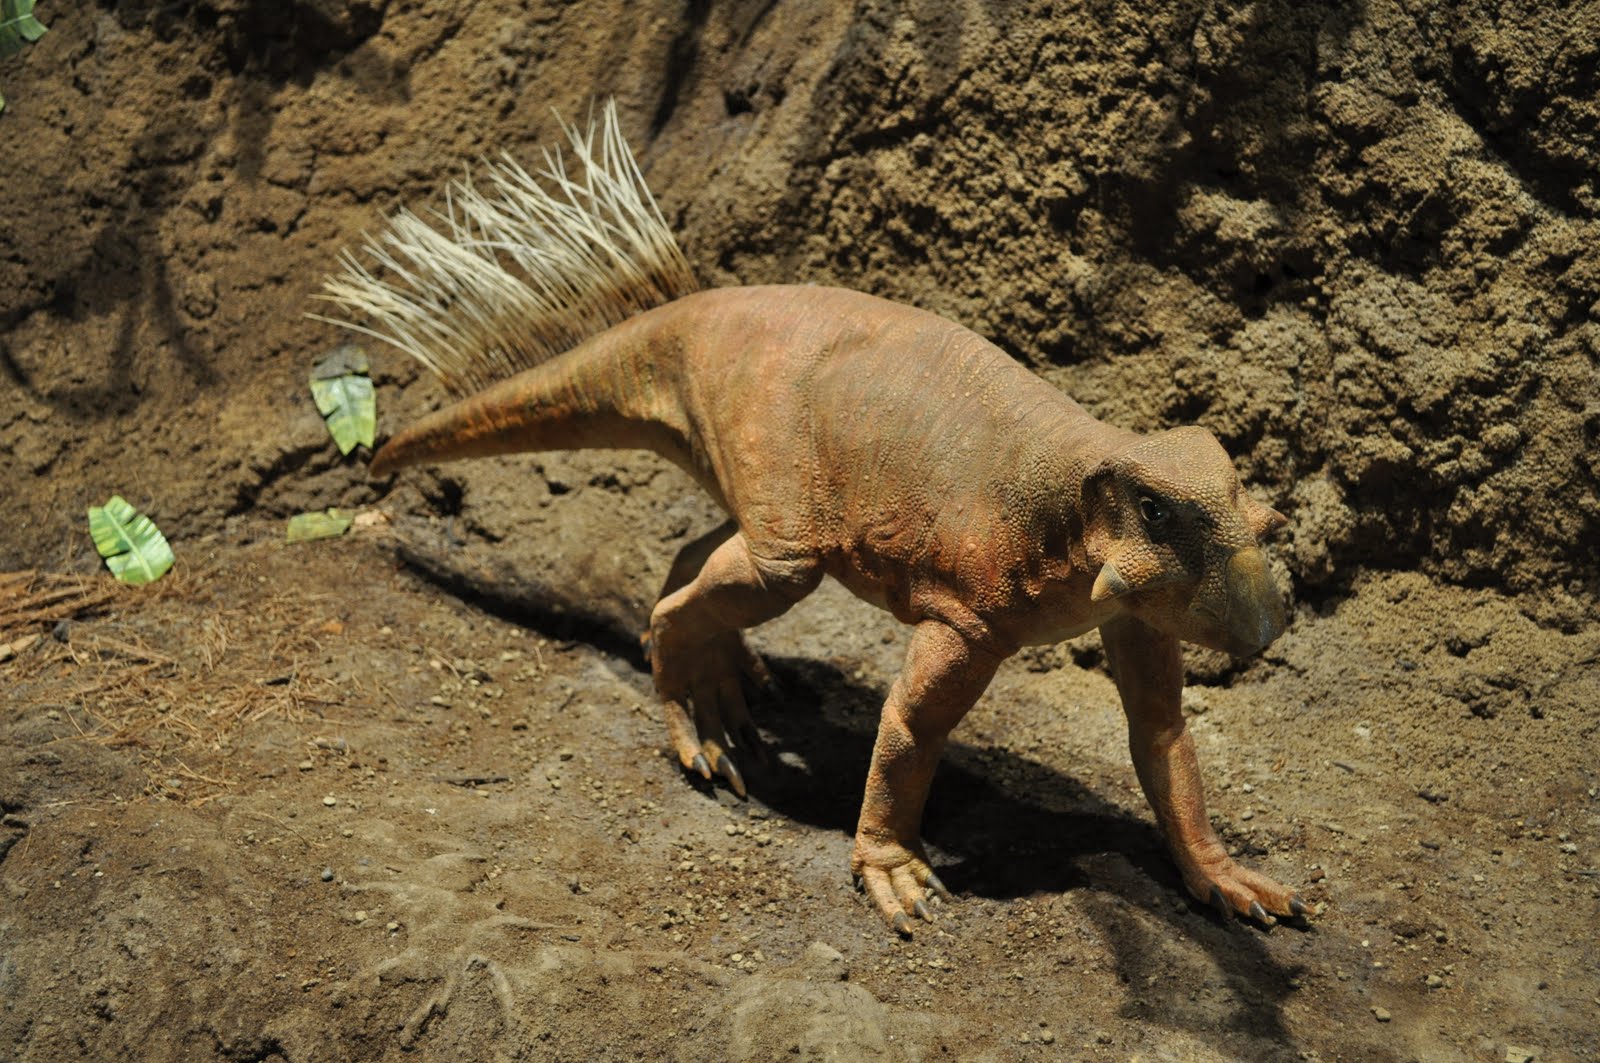 На какой территории жили динозавры